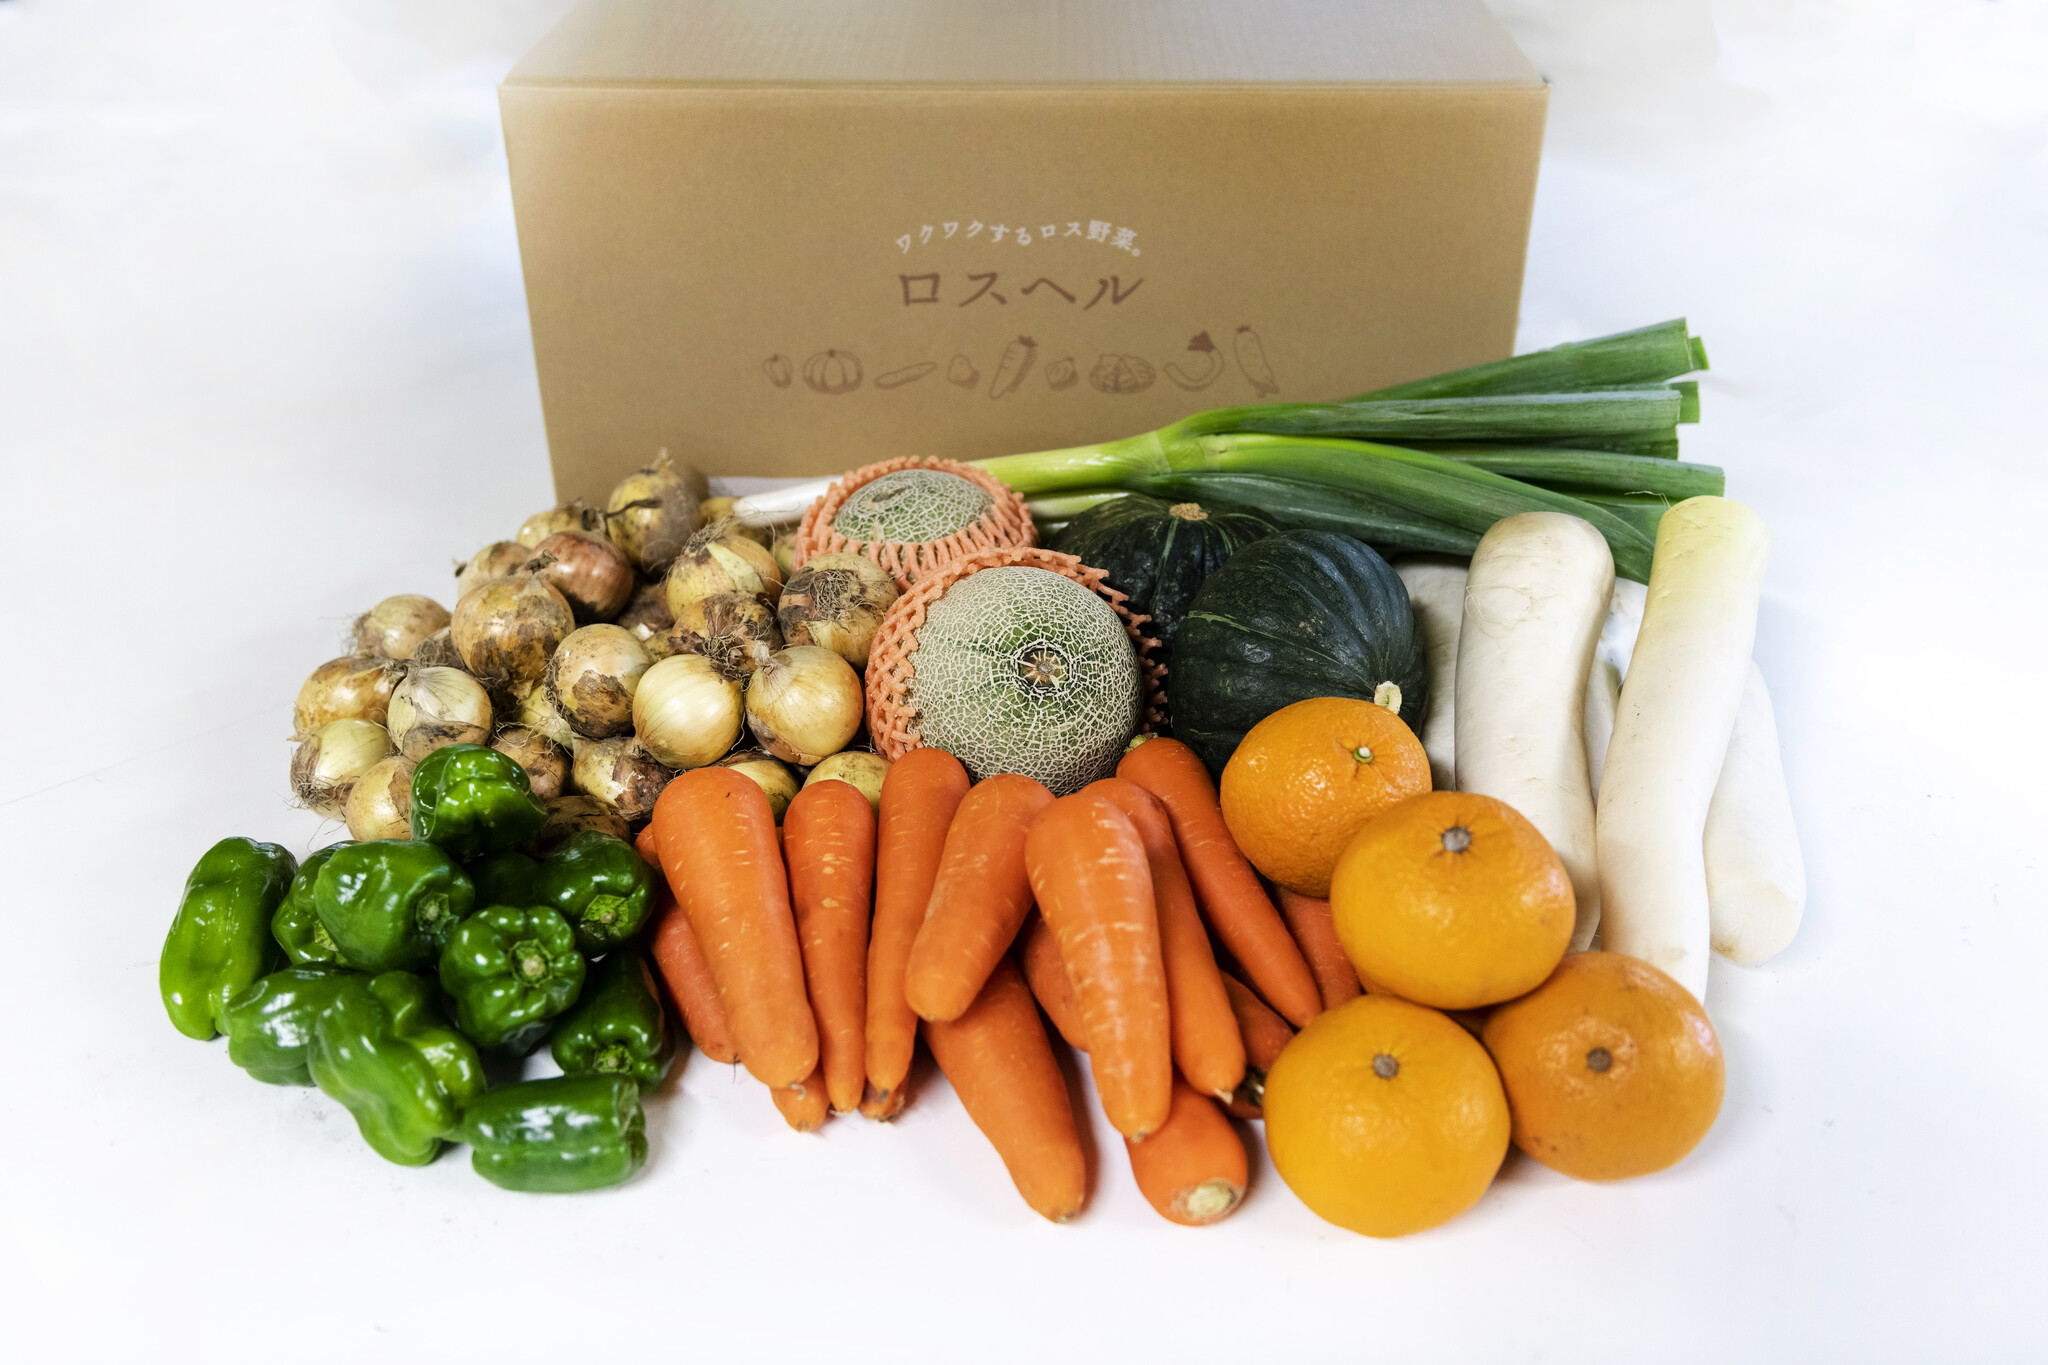 食品ロス削減のため「規格外野菜」の定期配送サービス「ロスヘル」、サービス開始から1年で出荷総数1万箱突破